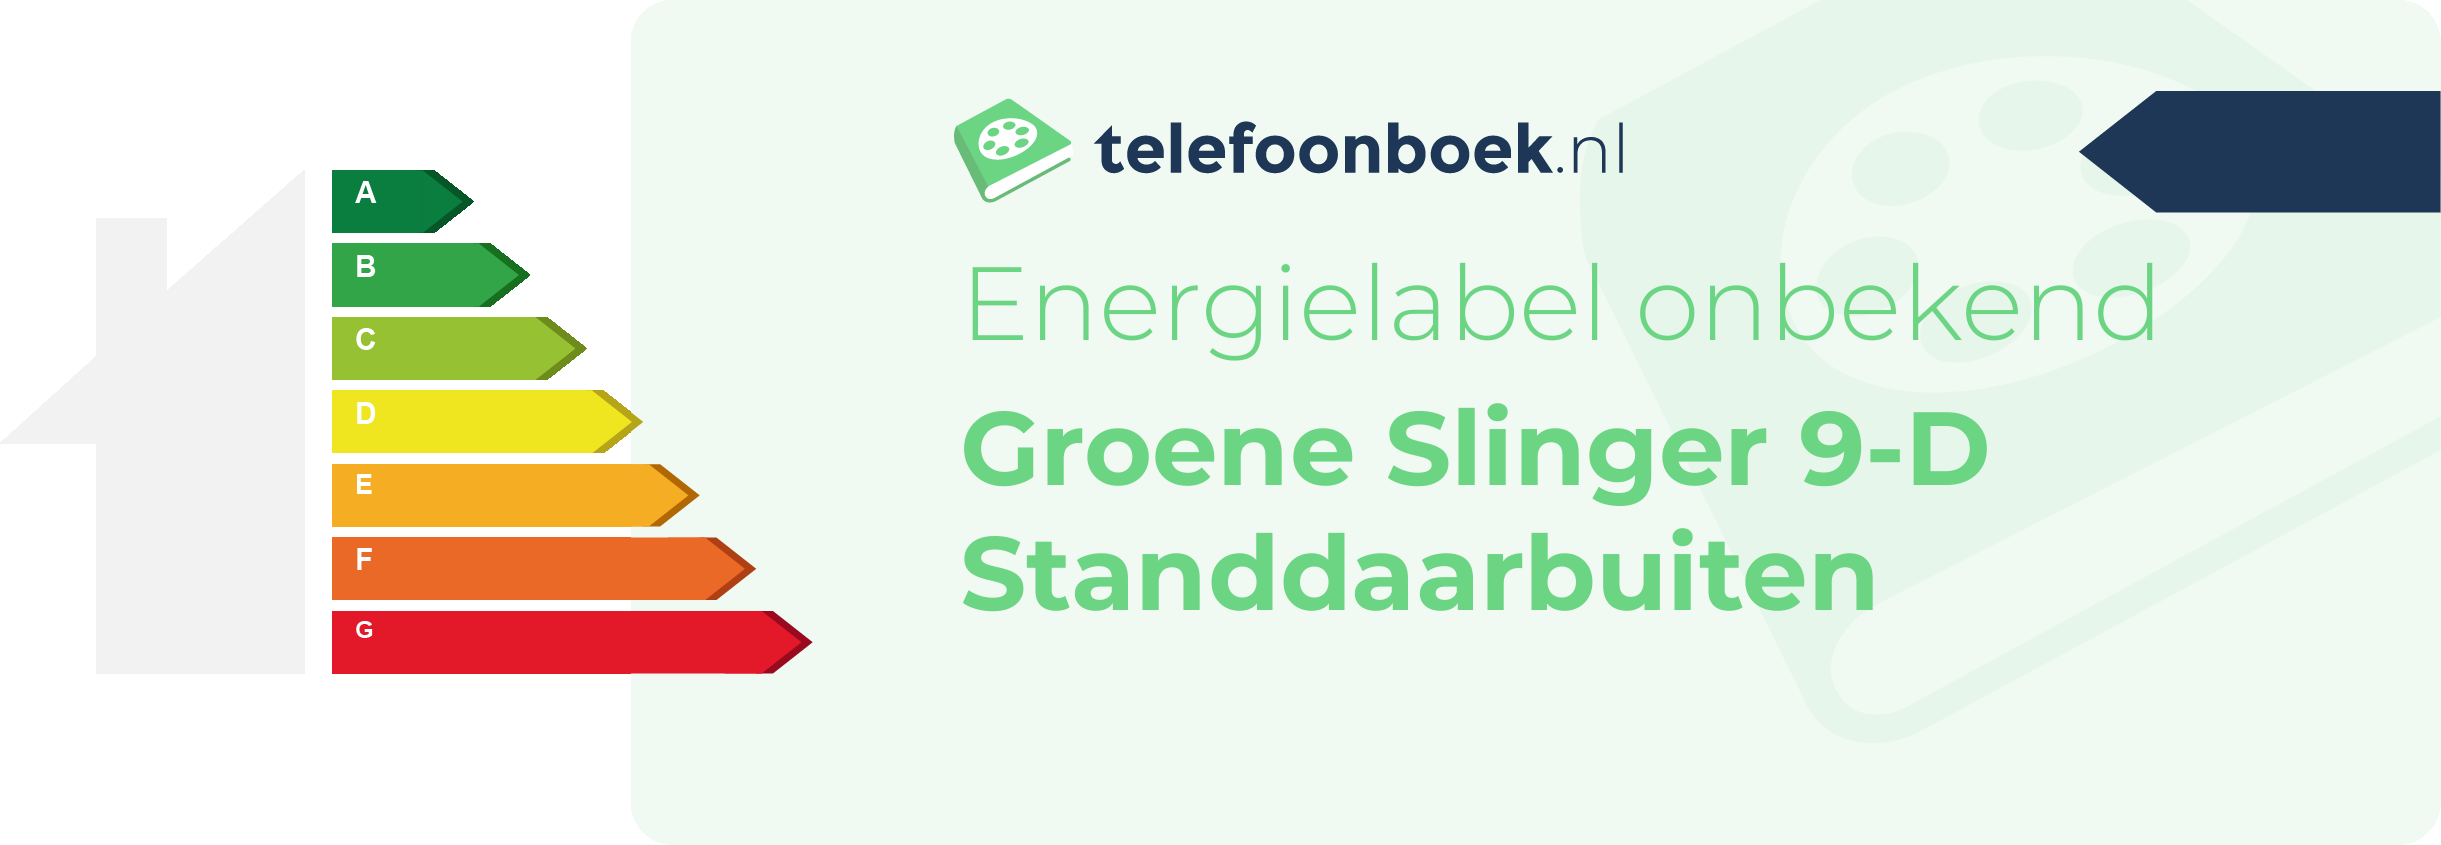 Energielabel Groene Slinger 9-D Standdaarbuiten